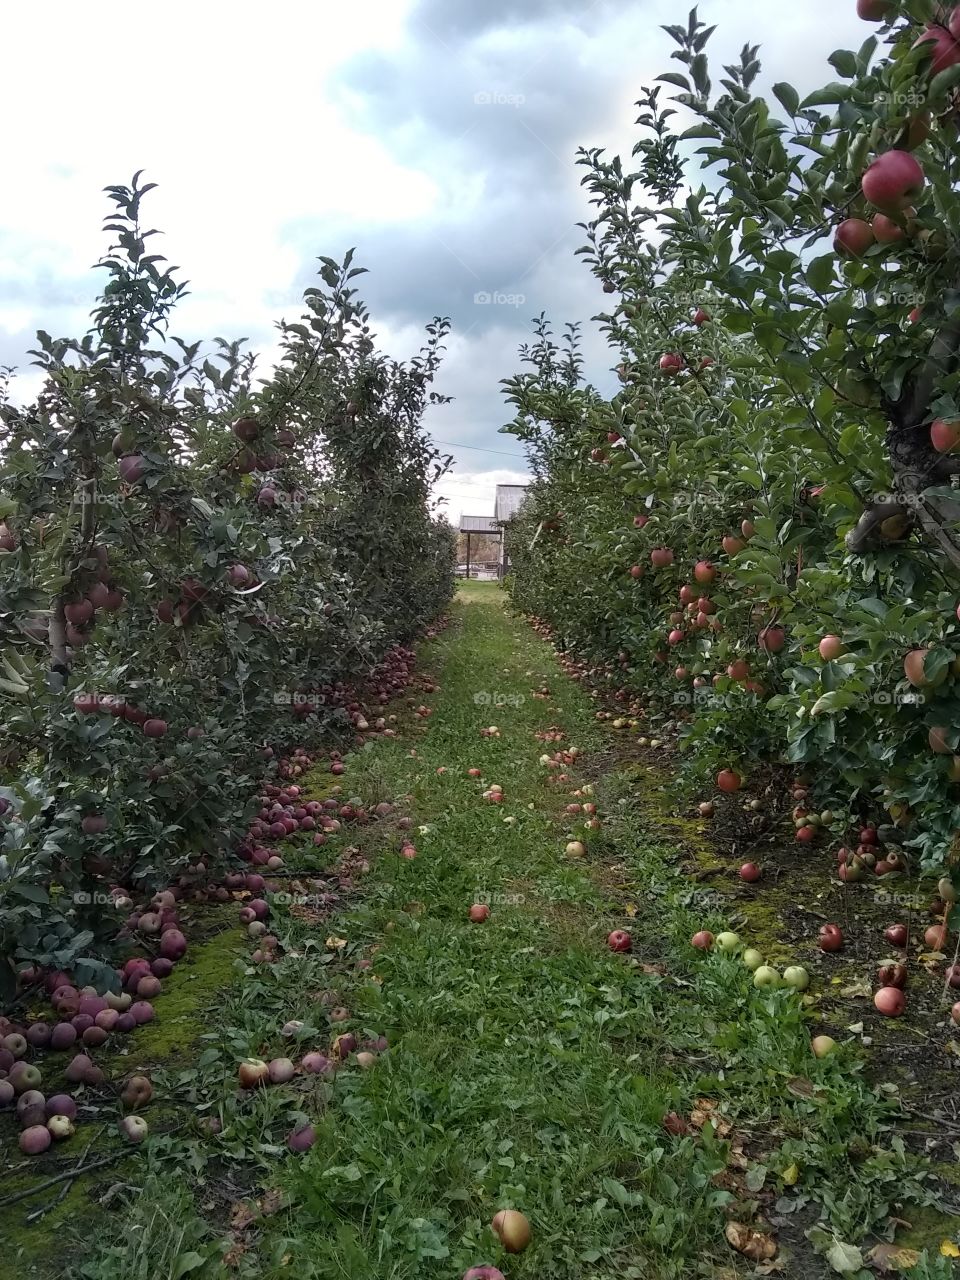 Apple Picking season